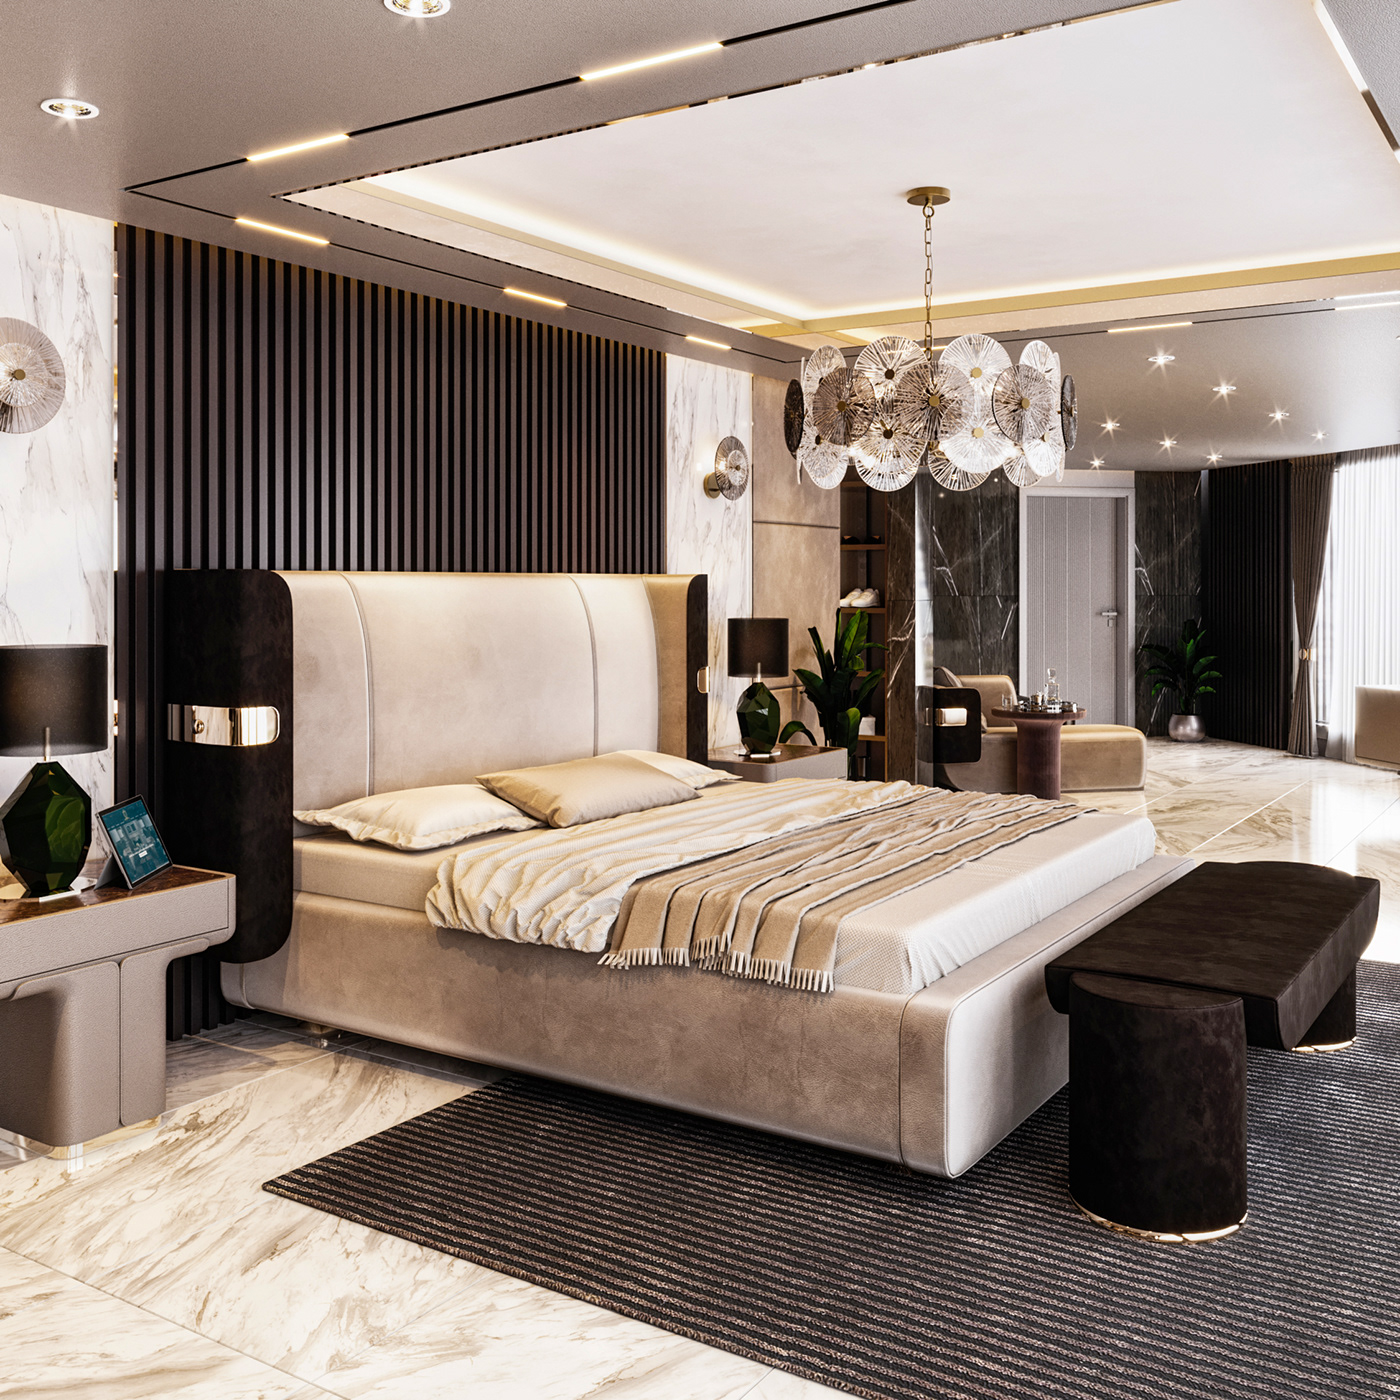 3ds max bedroom design corona render  Modern Design